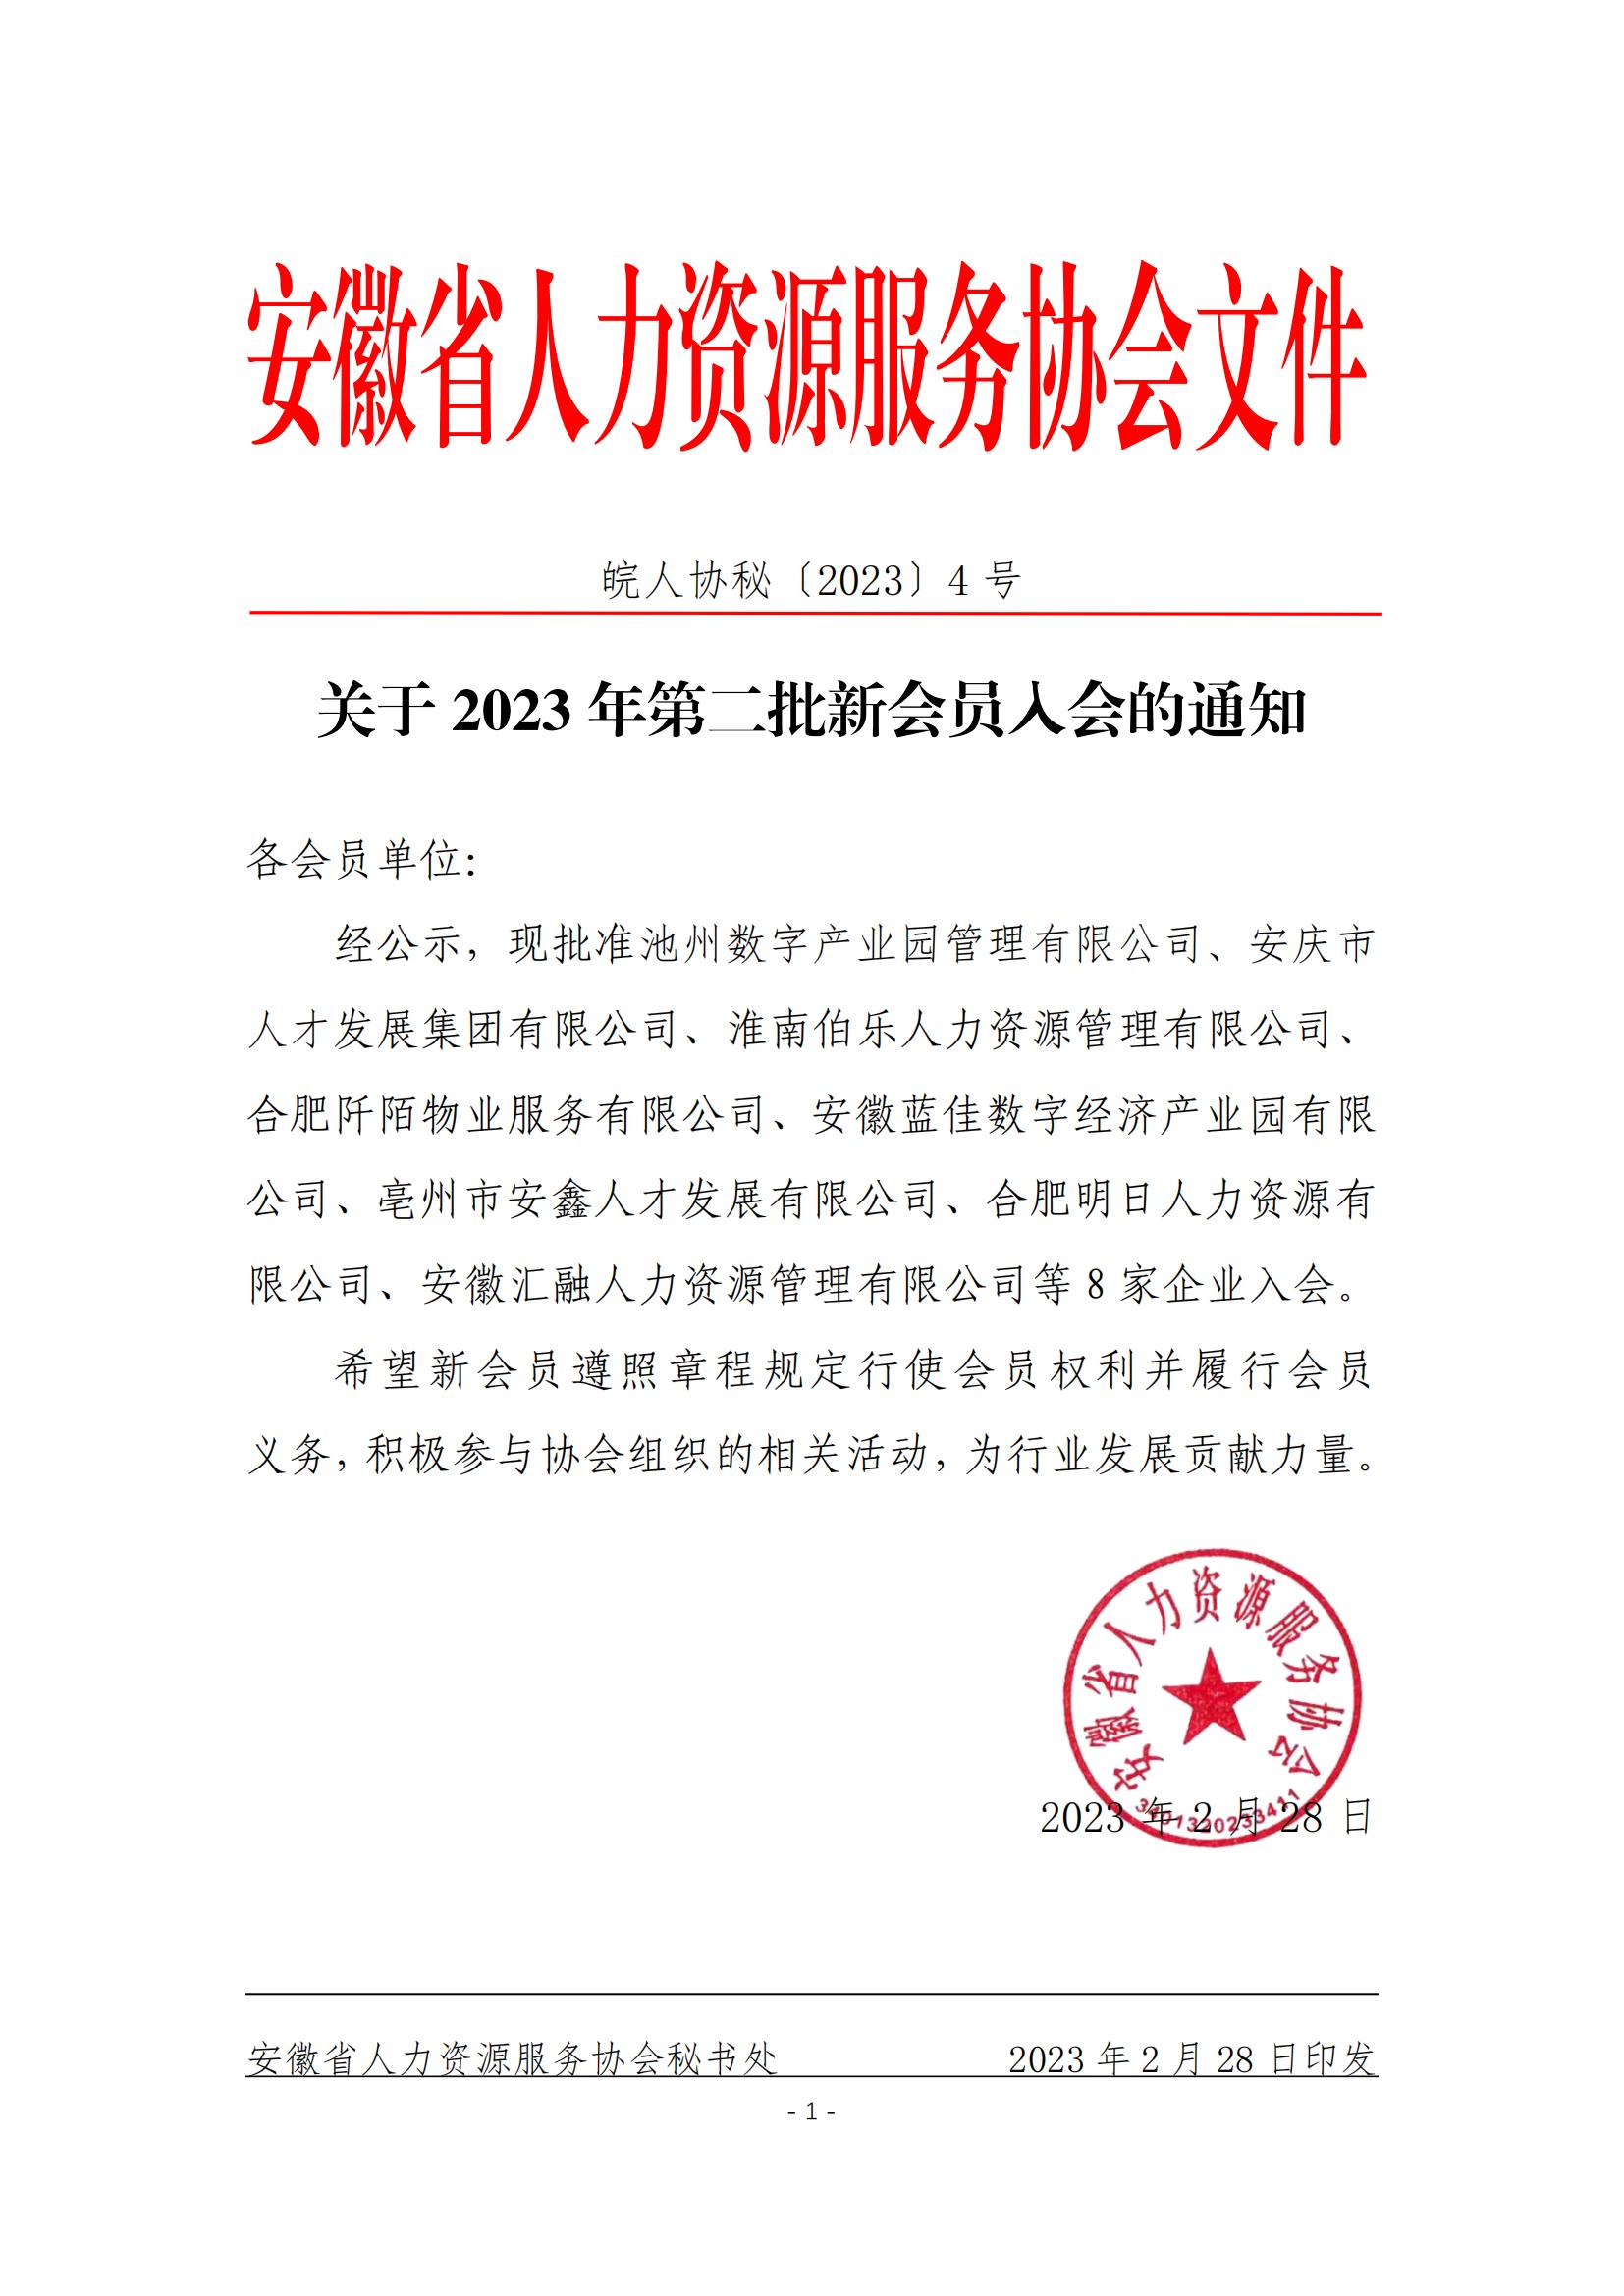 皖人协秘（2023）4号，关于批准2023年第二批新会员入会的通知_00.jpg